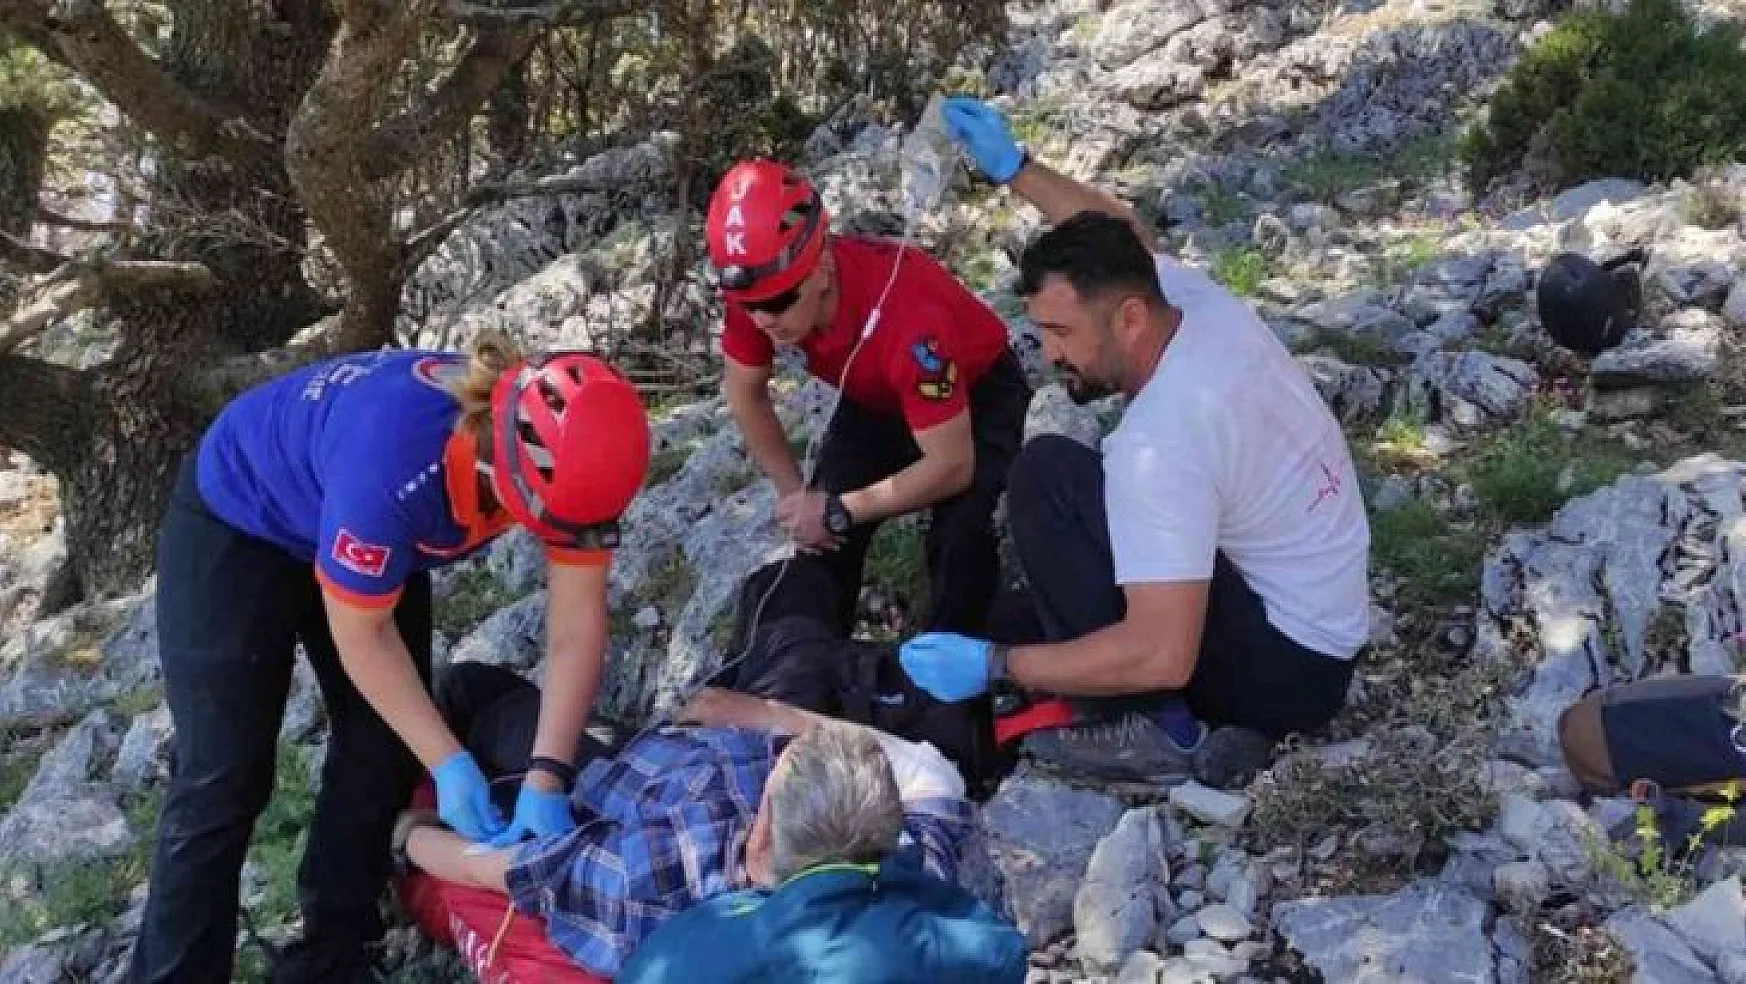 Yedek paraşütü açılan İngiliz turist kayalıklara düştü